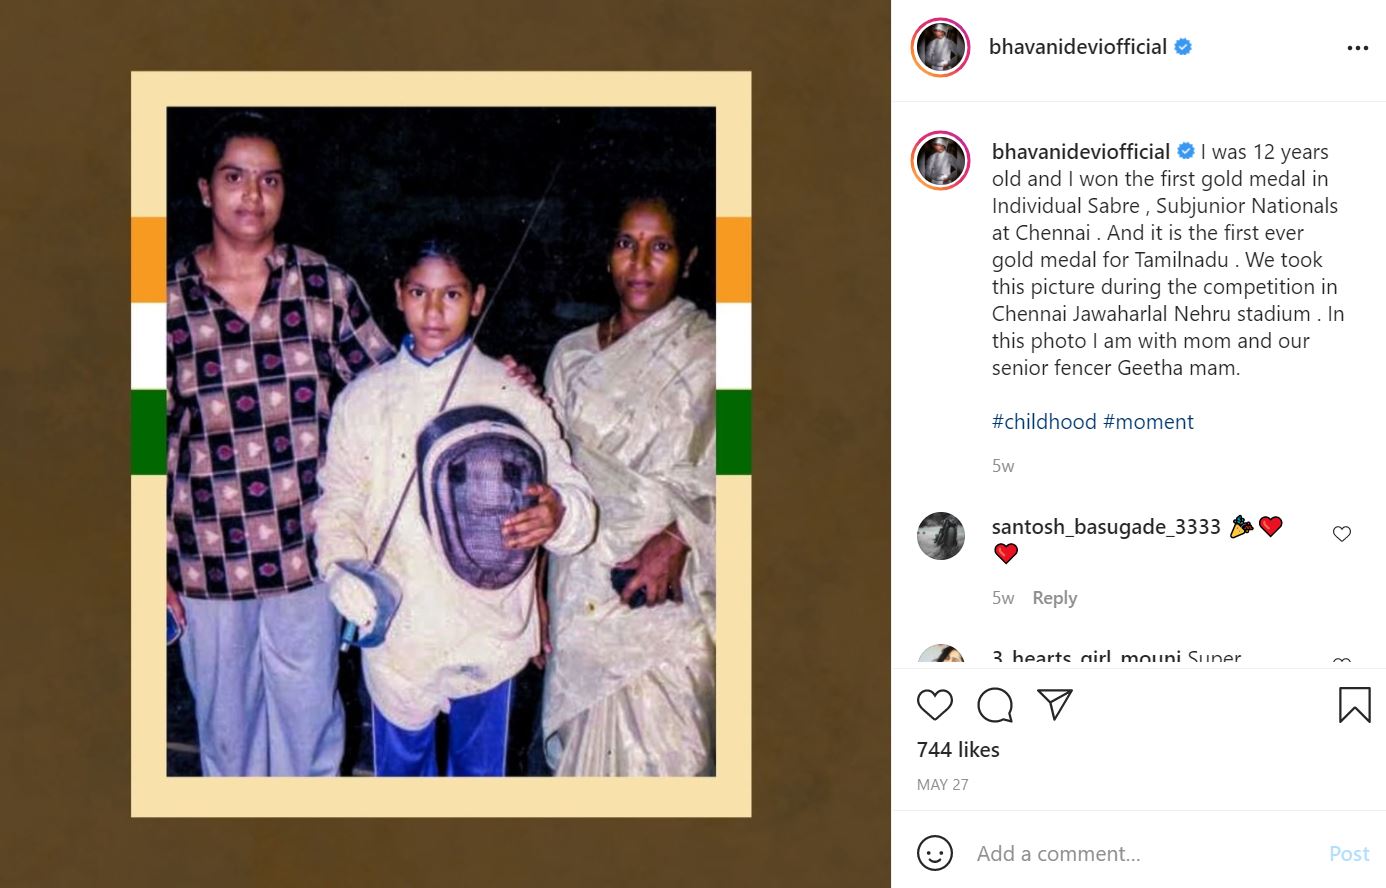 भवानी देवी के इंस्टाग्राम पोस्ट का स्क्रीनशॉट (जब उन्होंने 12 साल की उम्र में व्यक्तिगत कृपाण में अपना पहला स्वर्ण पदक जीता था)